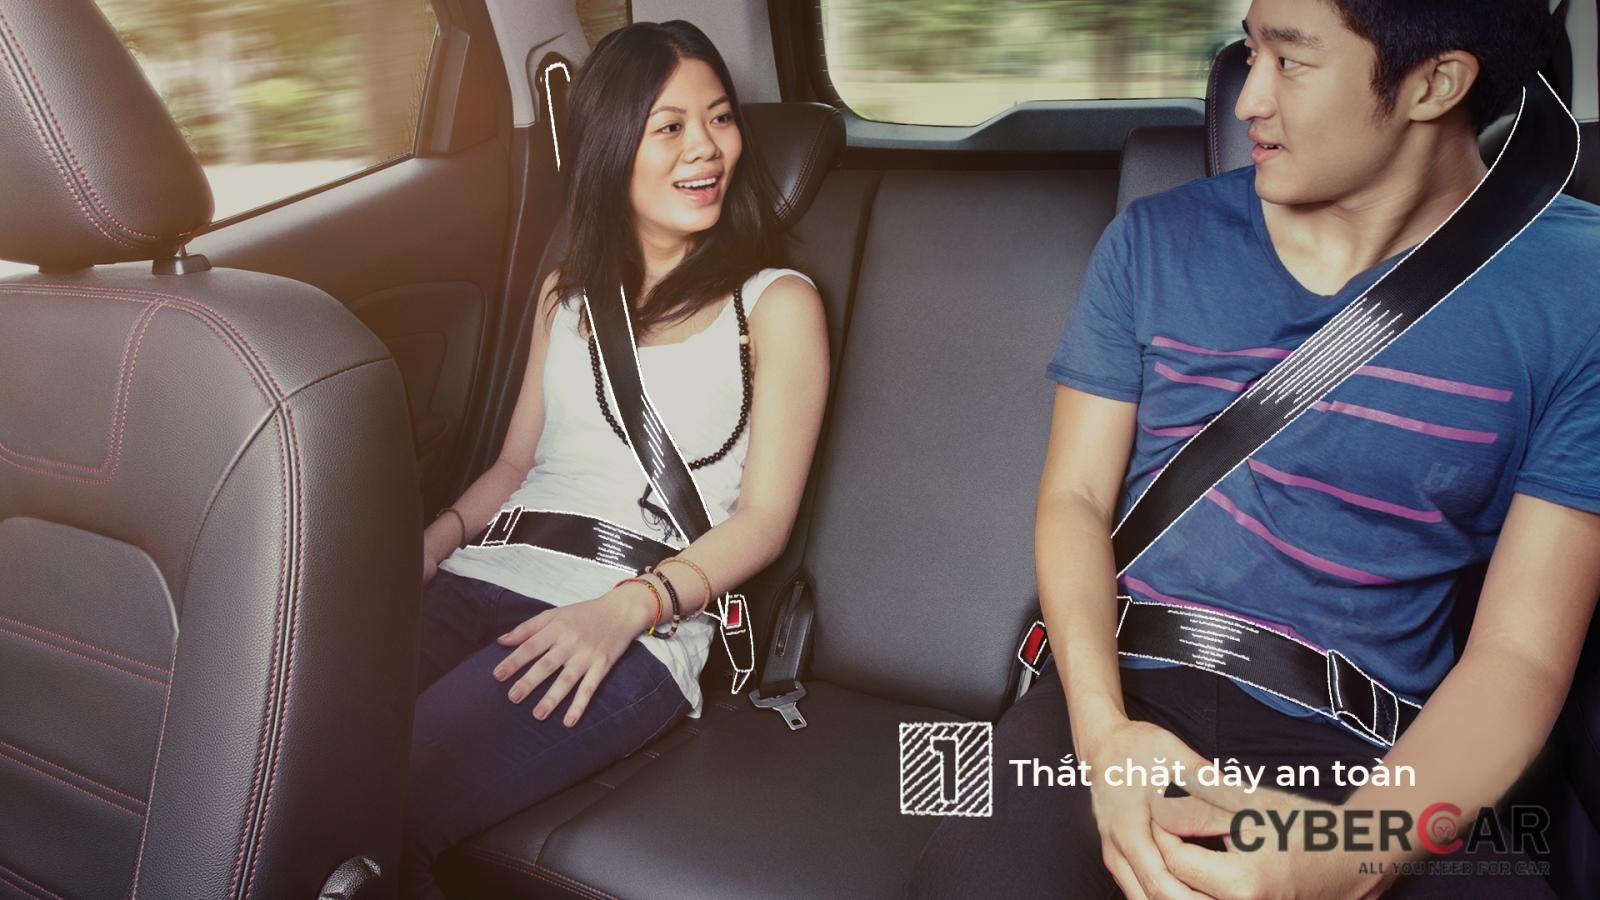 Quy tắc an toàn đầu tiên là thắt dây an toàn khi ngồi trong xe ô tô.